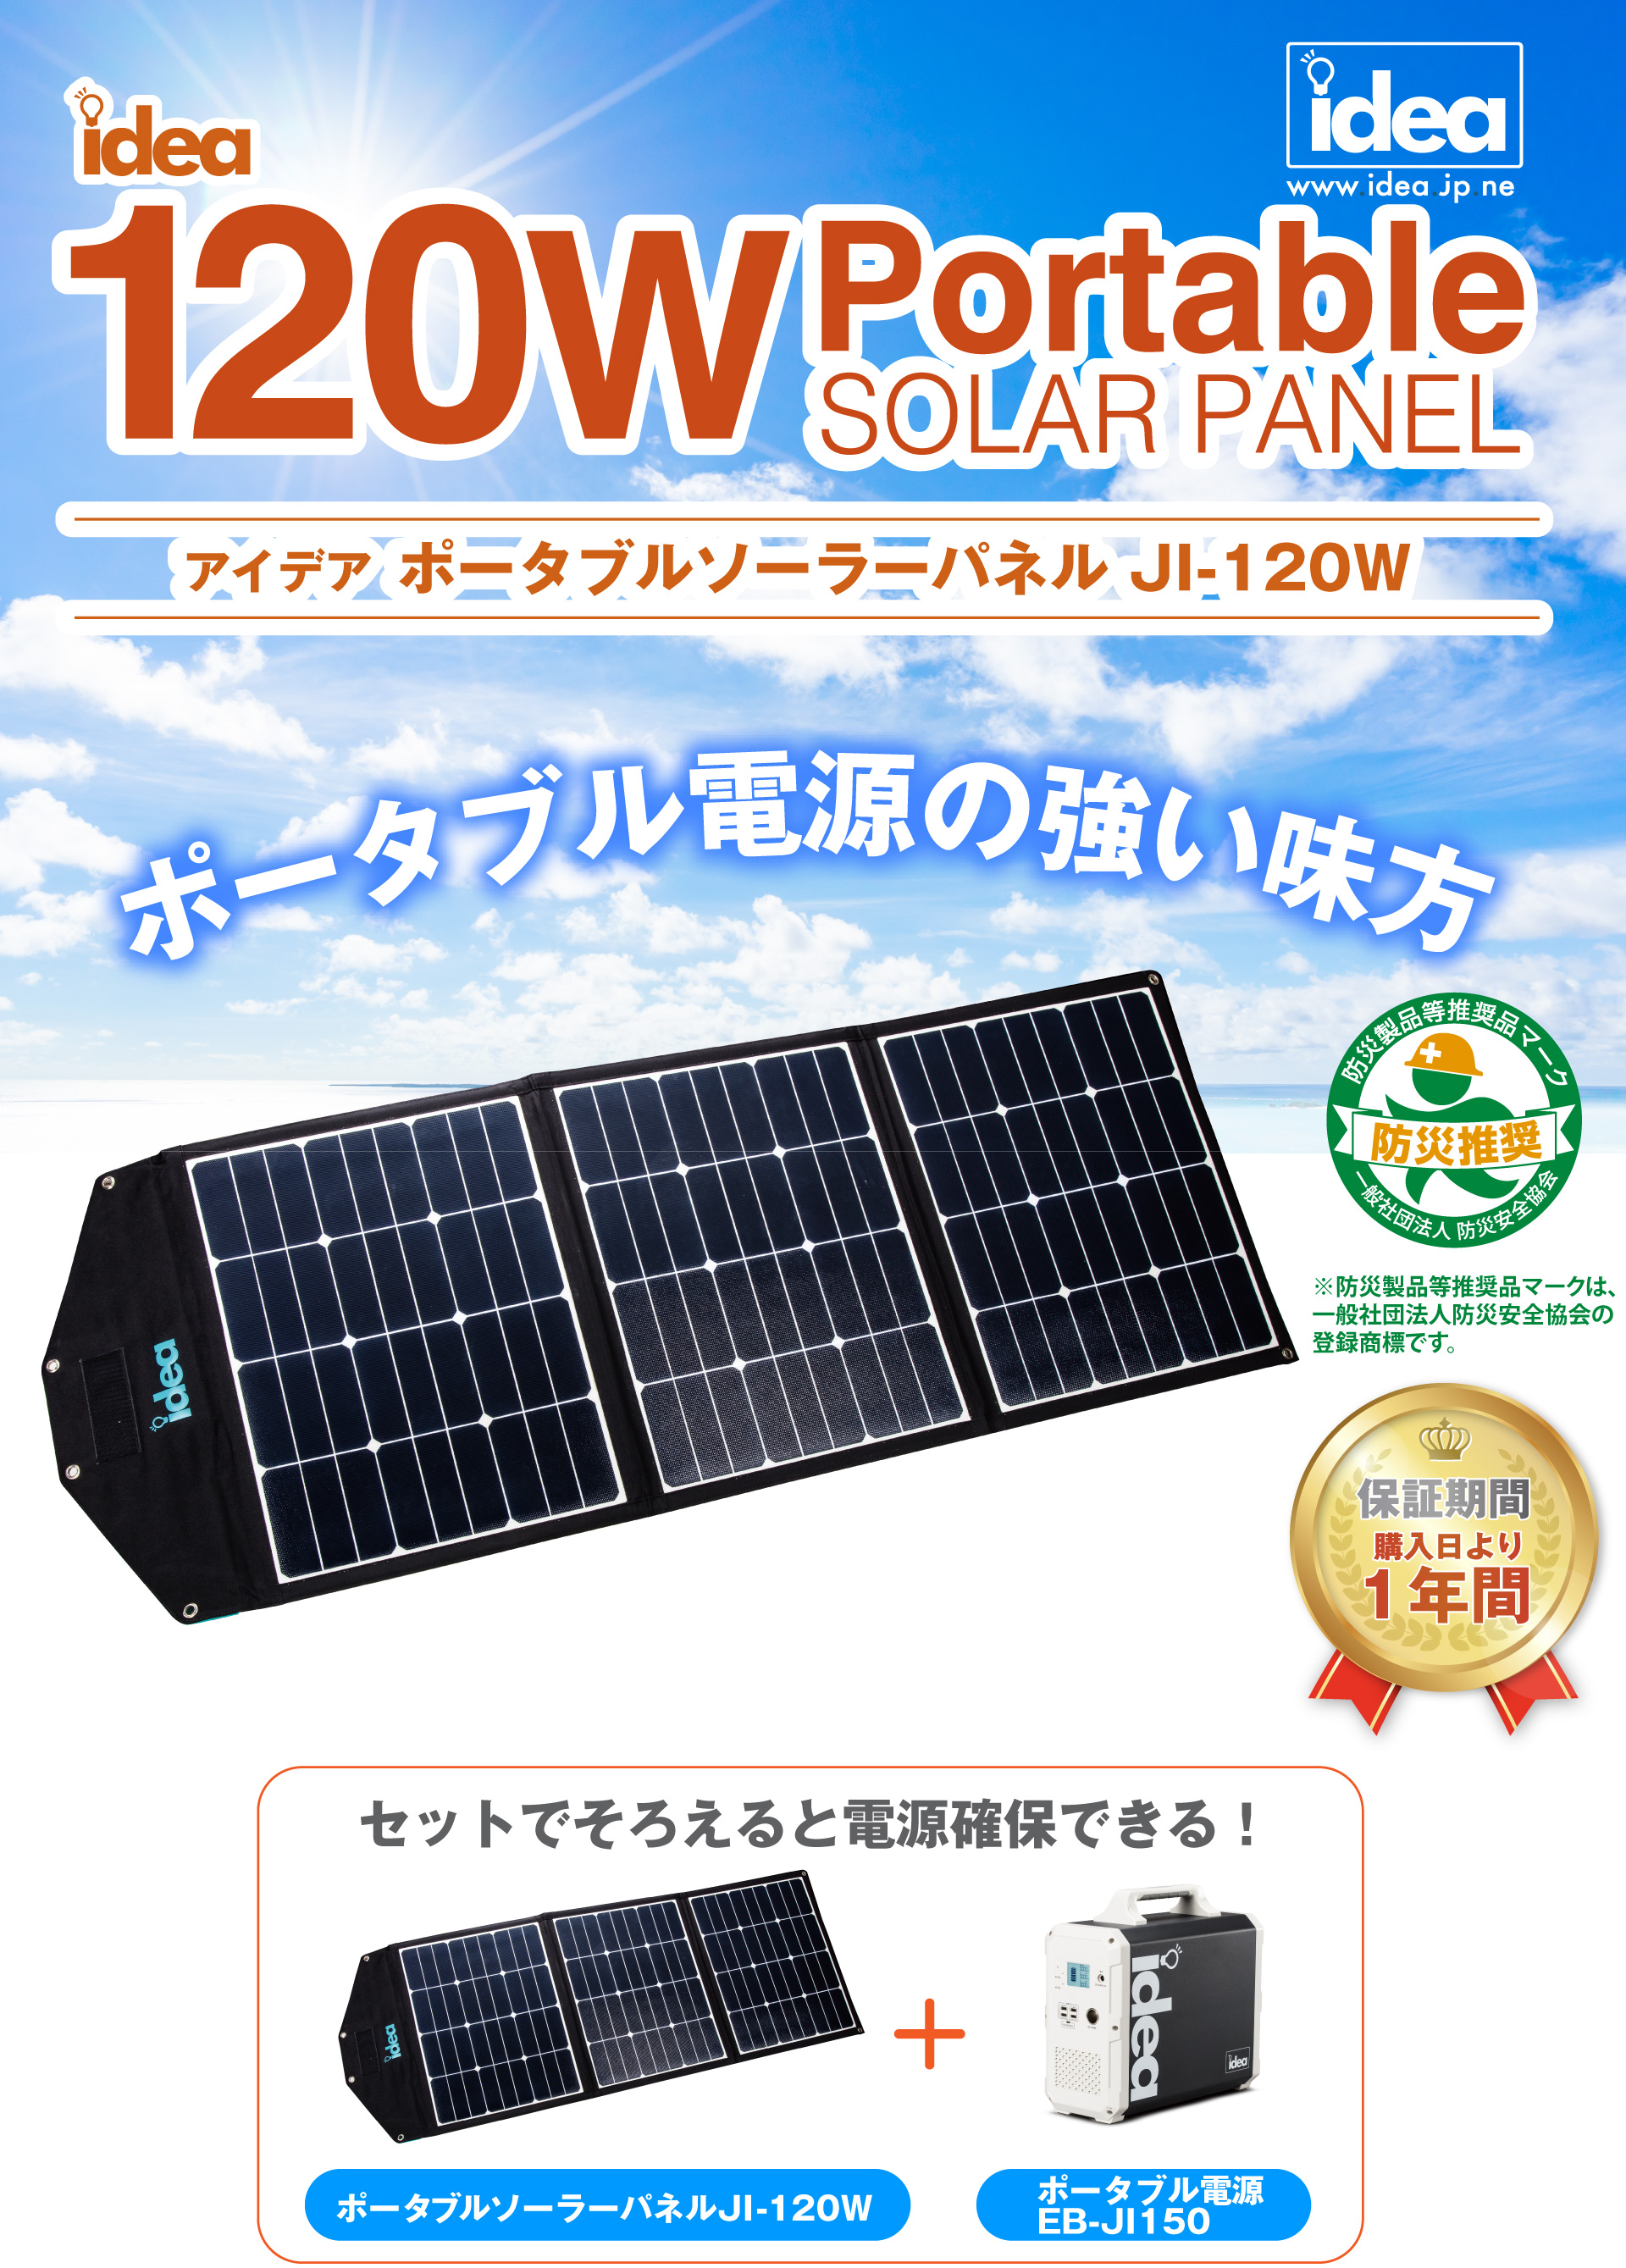 ポータブル・ソーラー・パネル JI-120W